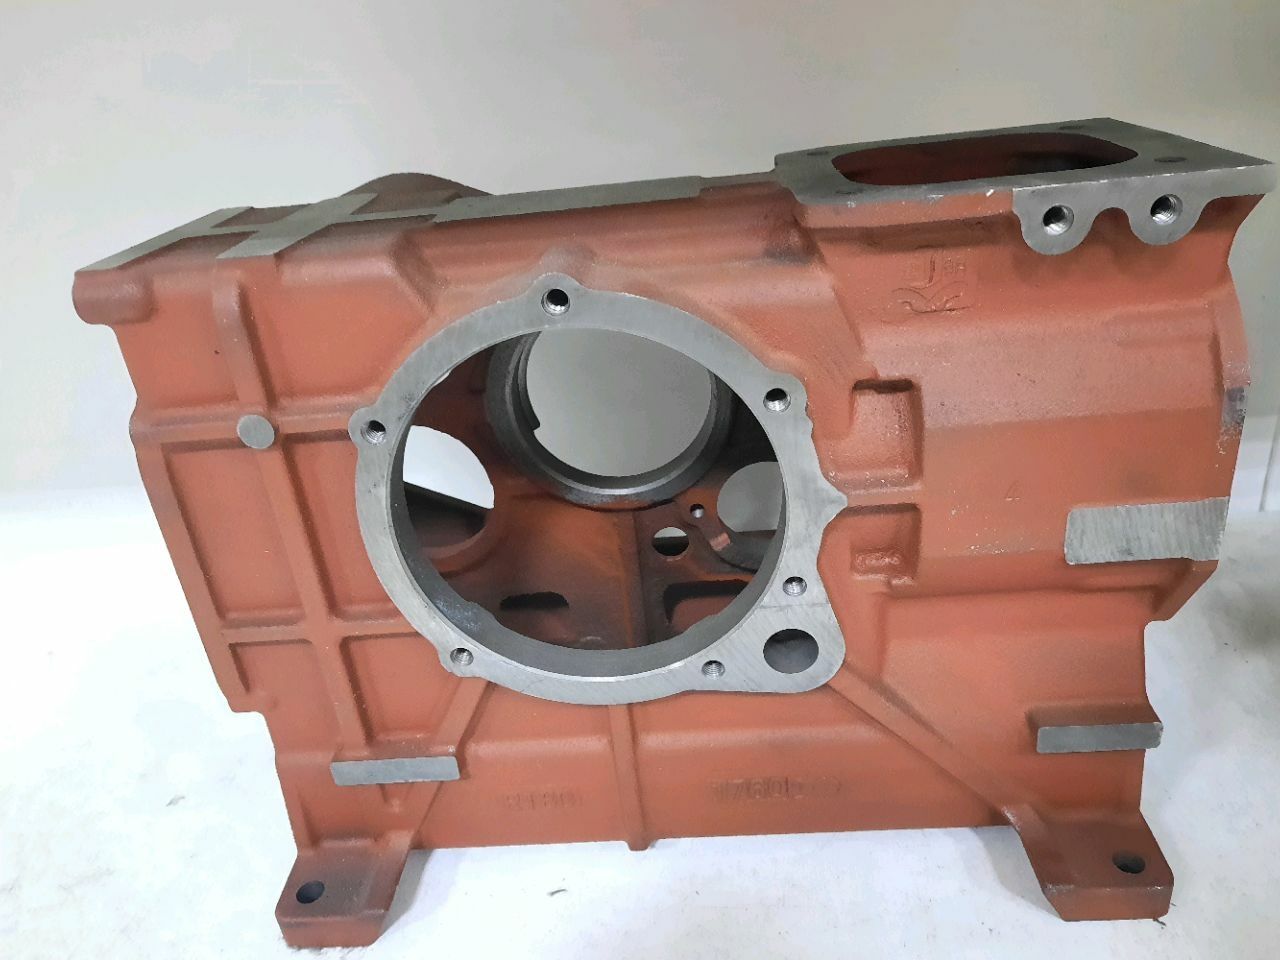 Bloc cilindru motor dizel motobloc 8 c.p.